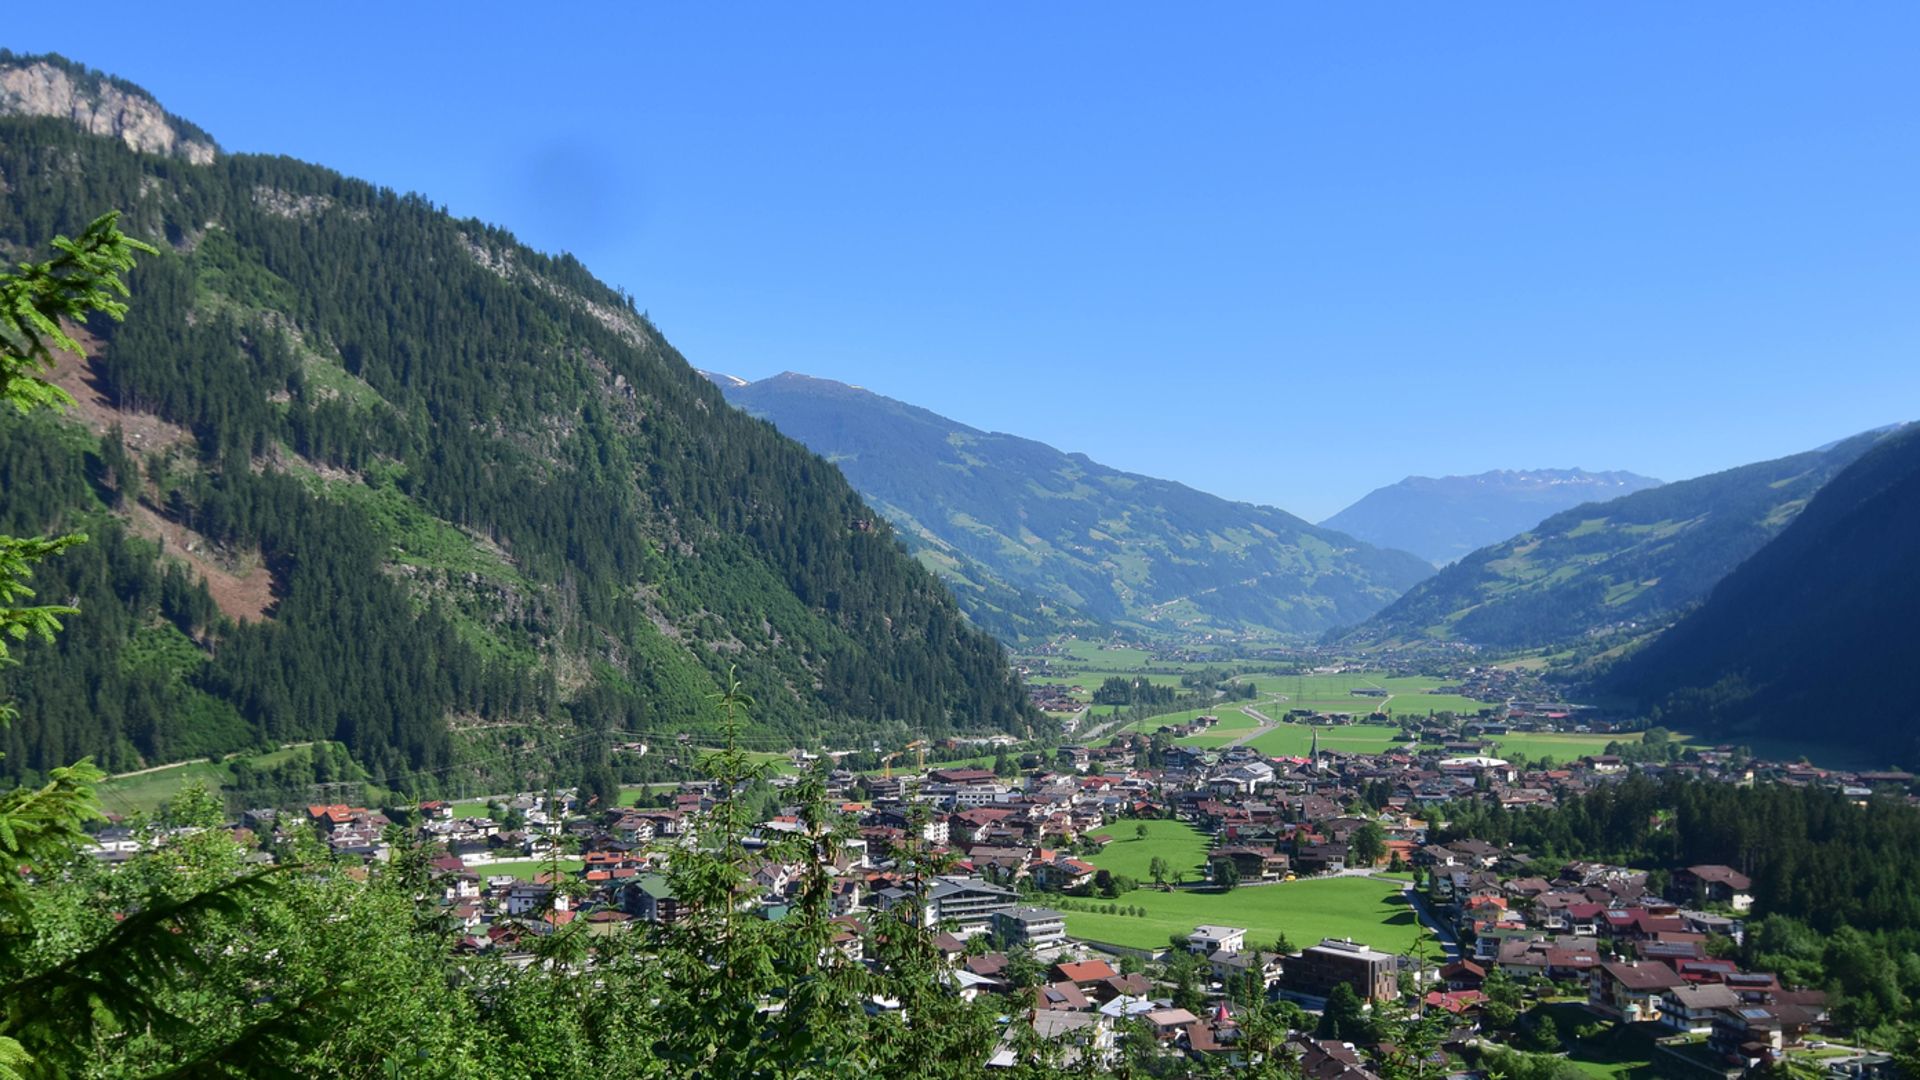 Blick auf den Ort Mayrhofen im Sommer